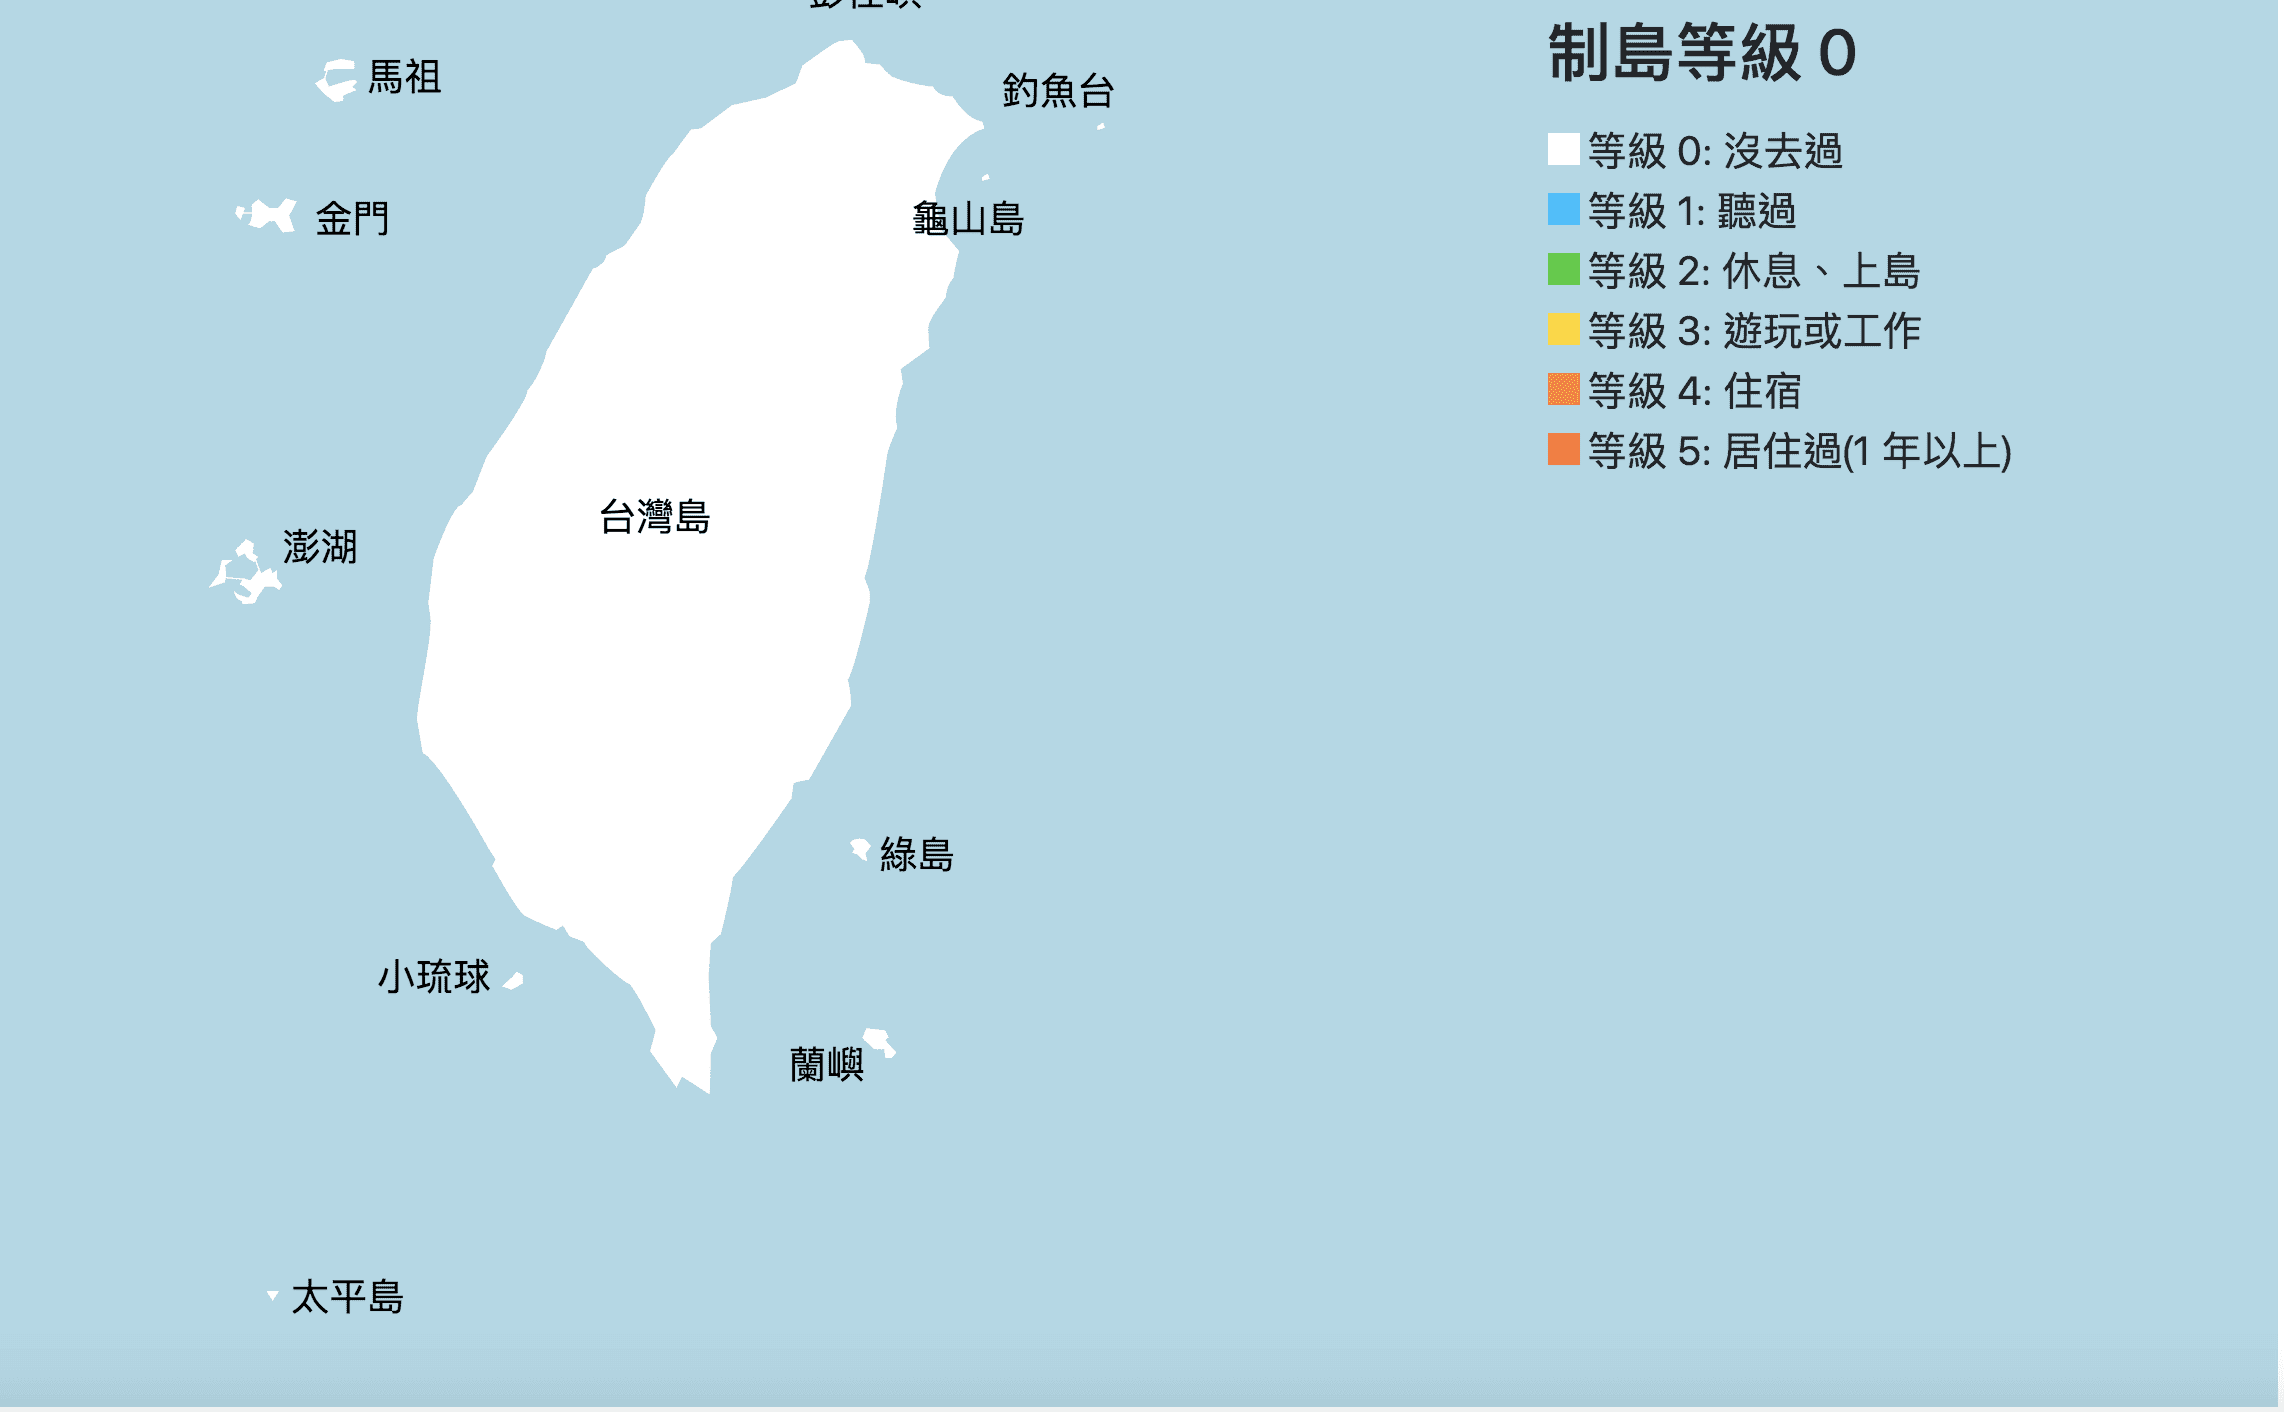 進階版台灣制縣等級/制島等級，比拼日本詳細版本喔～天兒，還有多少台灣要完成啊？！